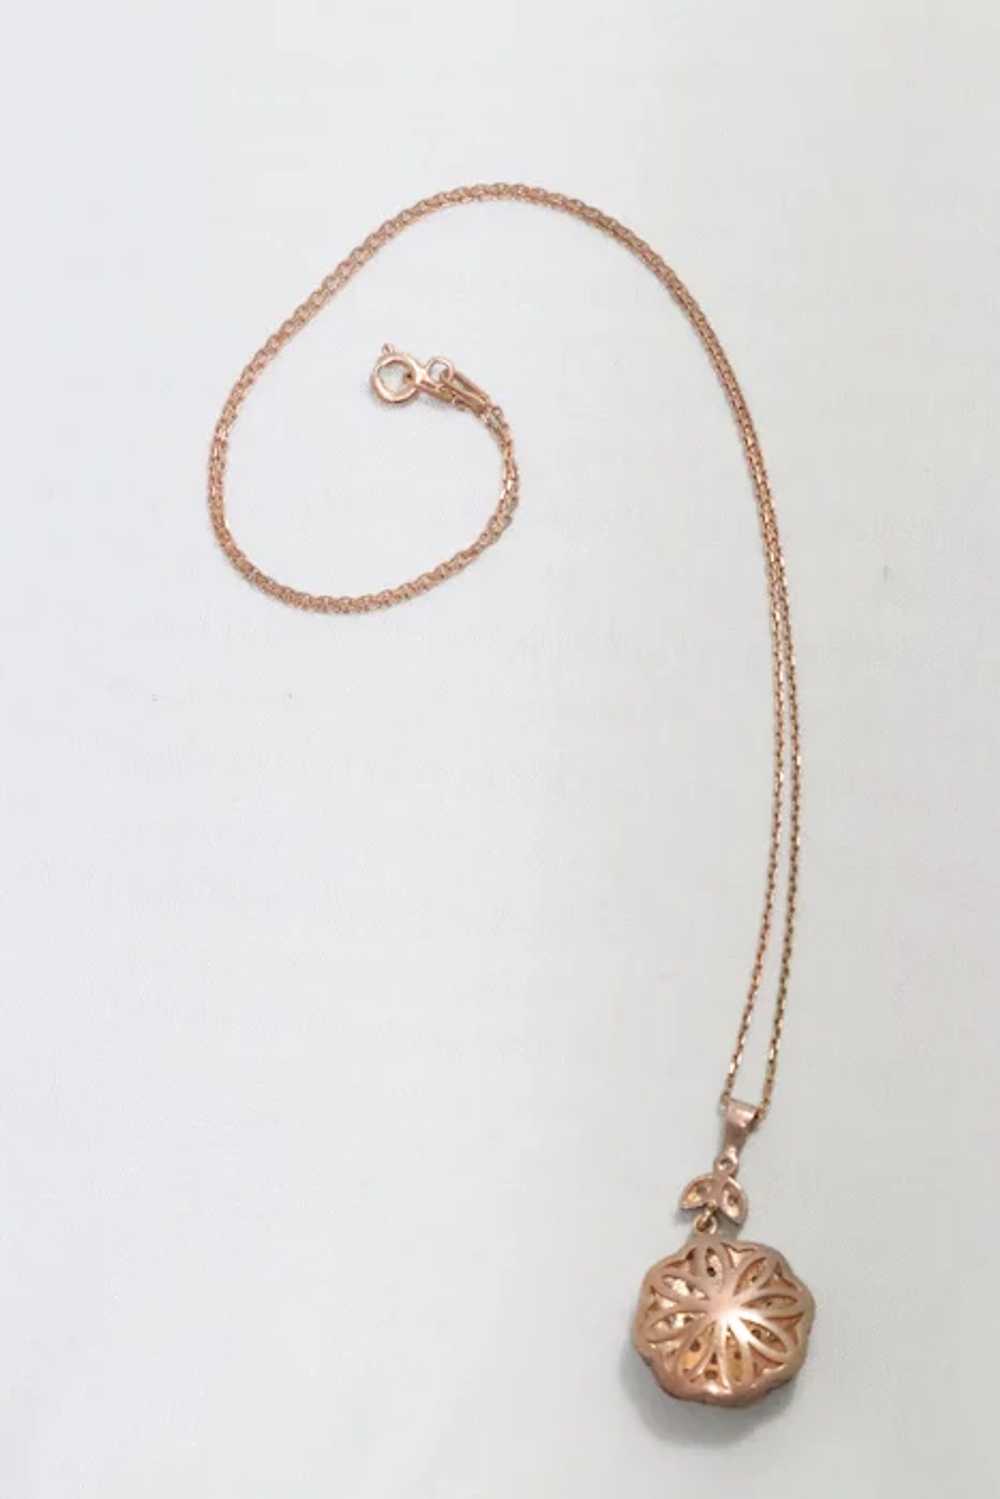 Vintage Sterling Silver Rose Gold Tone Necklace - image 4